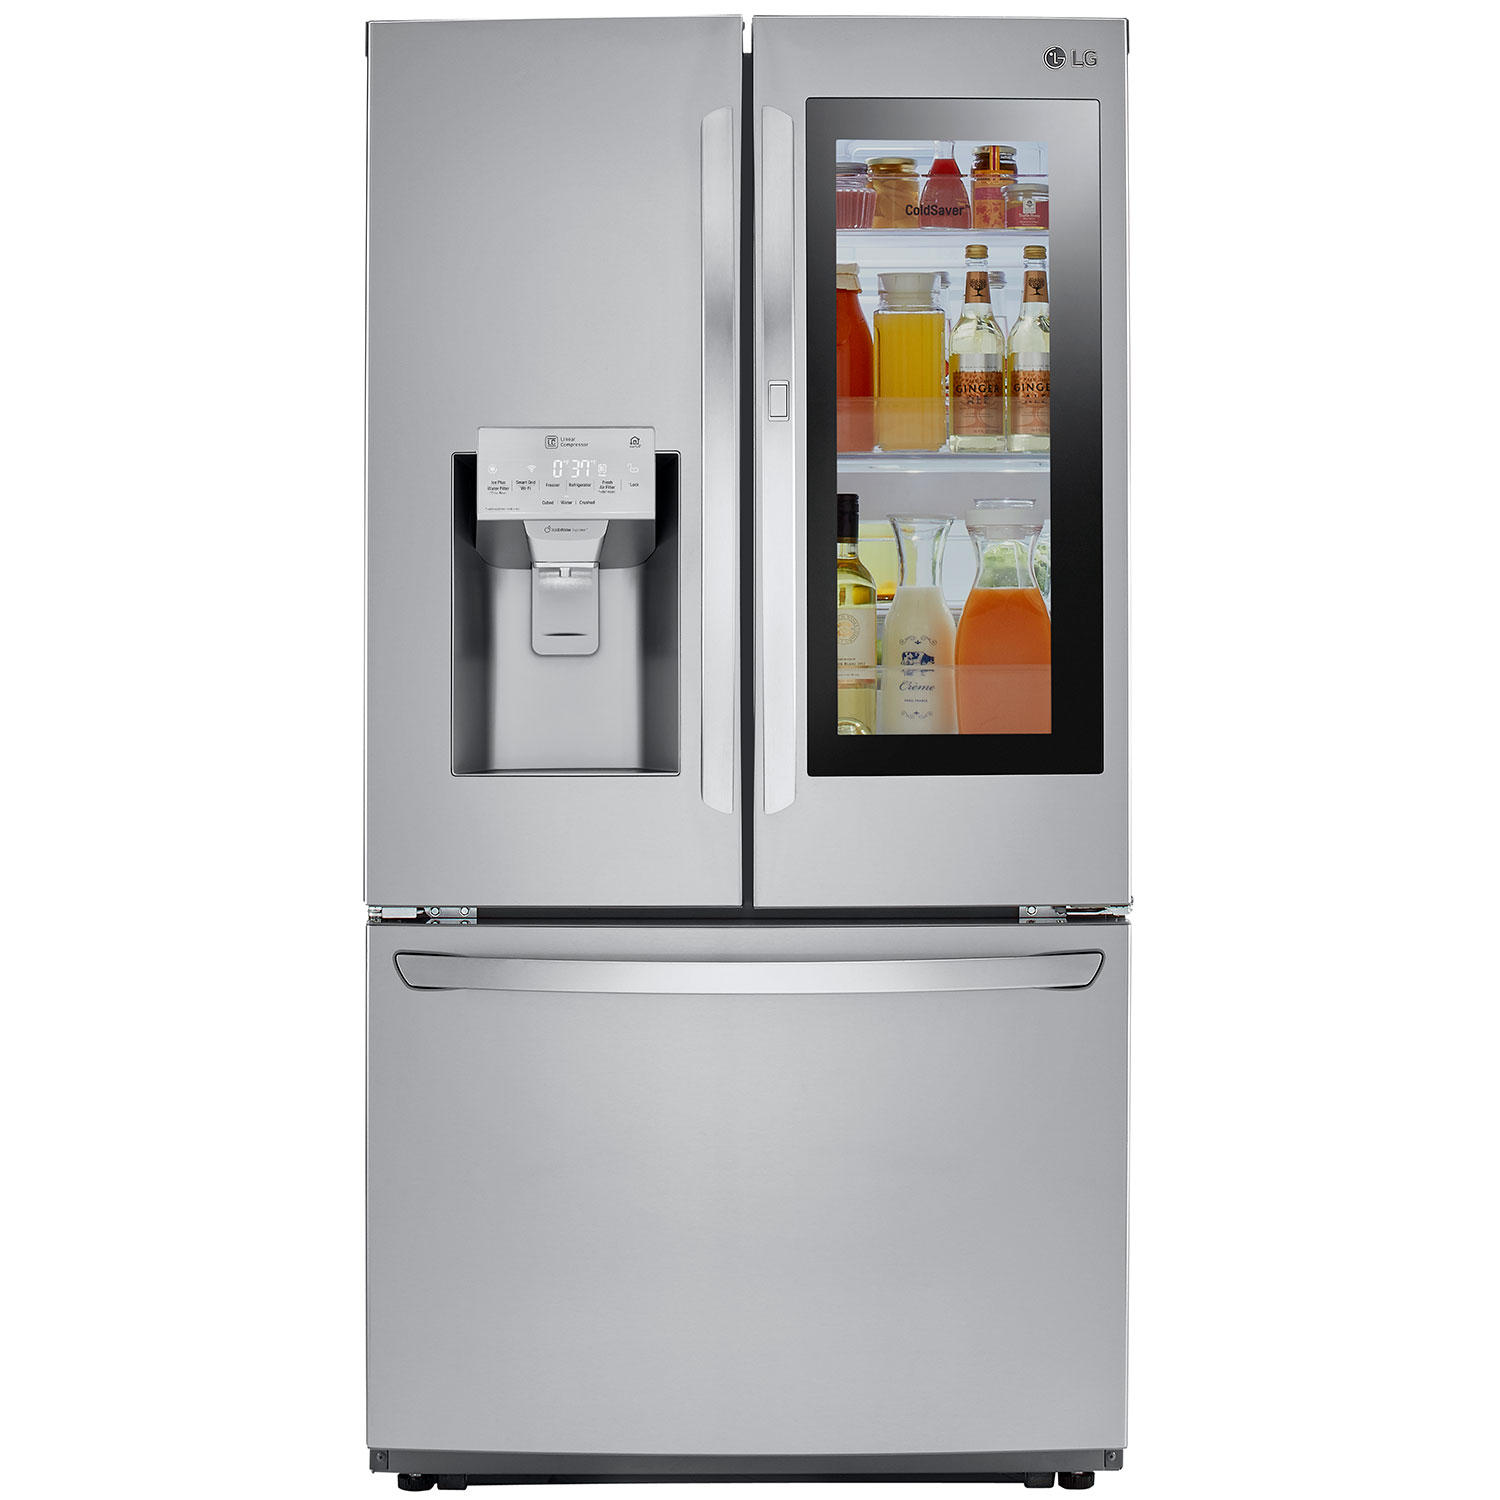 LG LFXC22596S 22 cu ft Smart Wi-Fi Counter Depth InstaView Door-In-Door Refrigerator